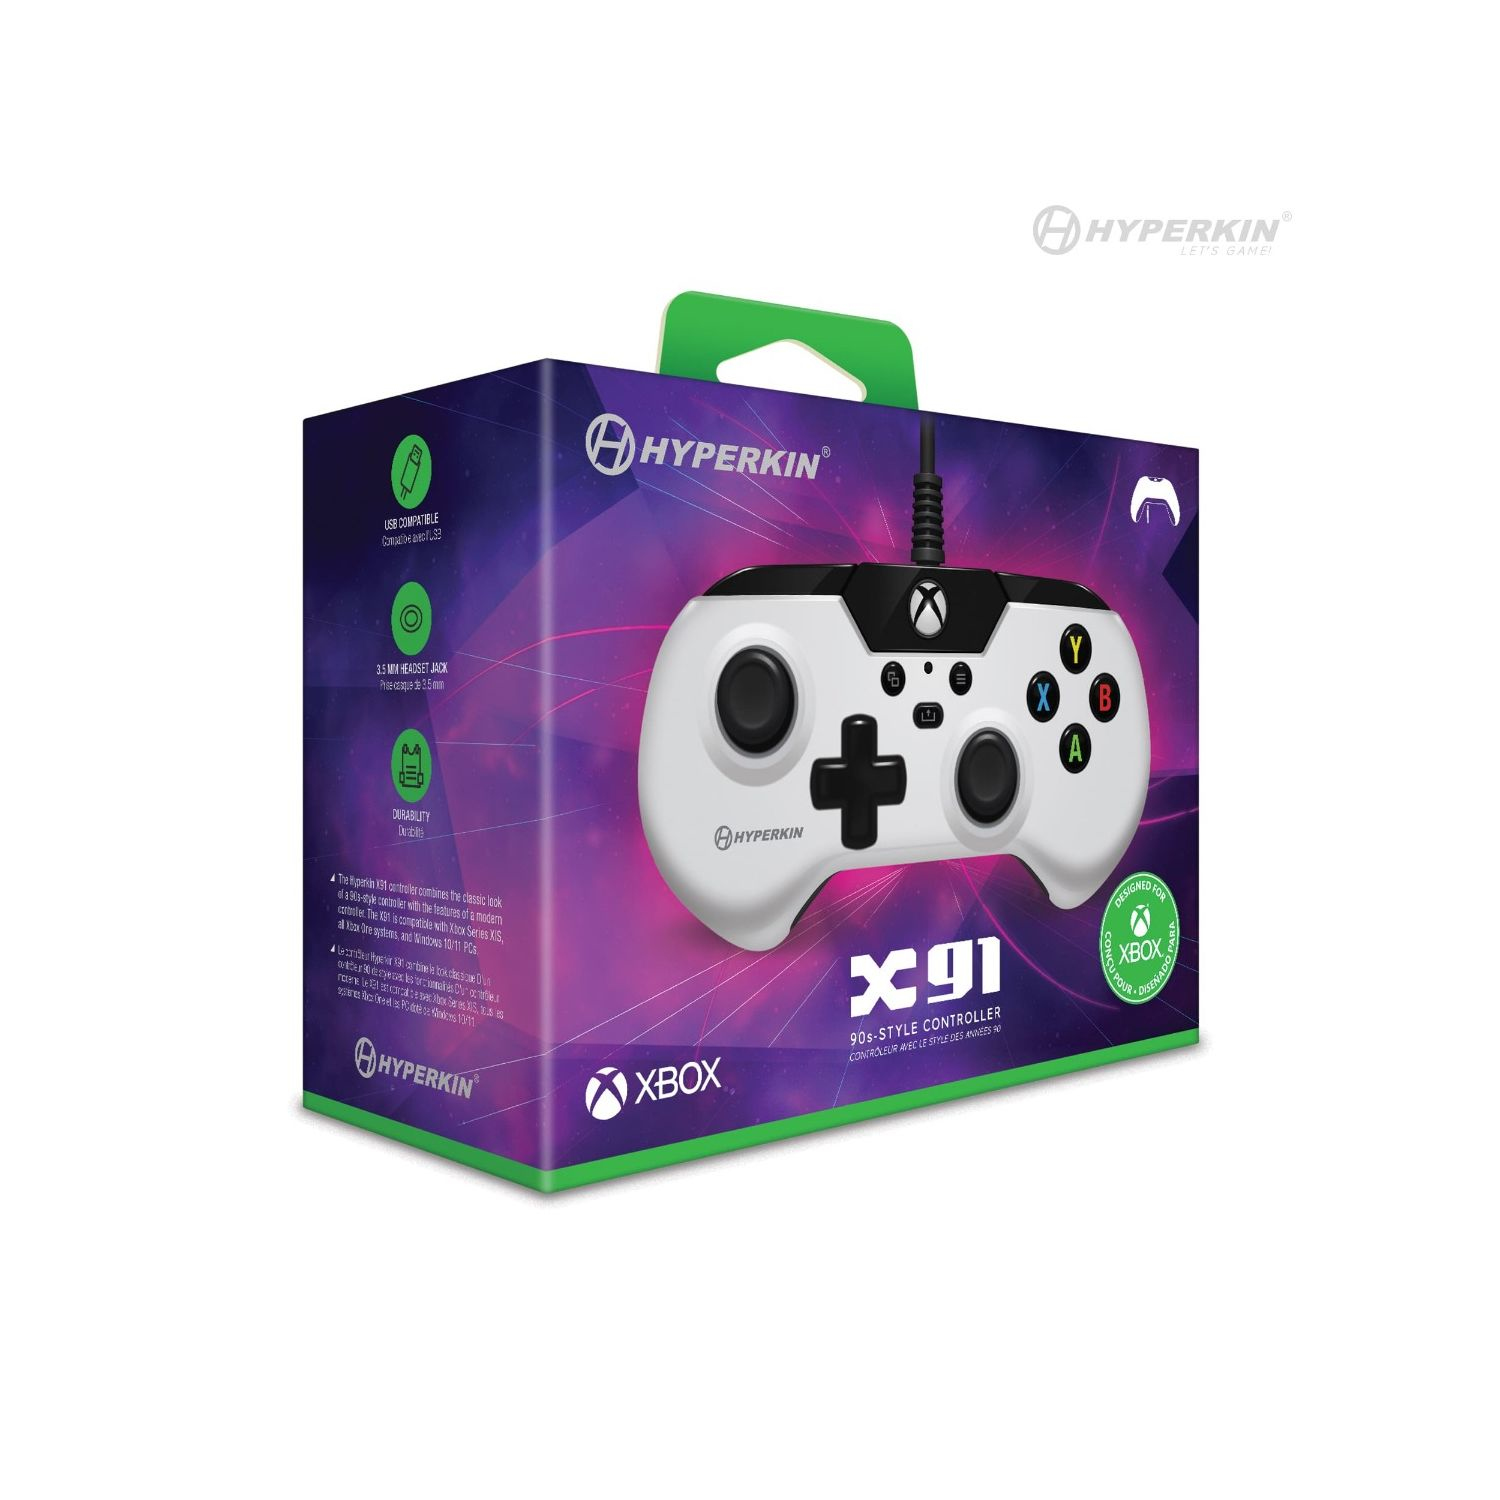 Hyperkin X91 Black, White USB Gamepad Analogue / Digital Xbox One S, Xbox One X